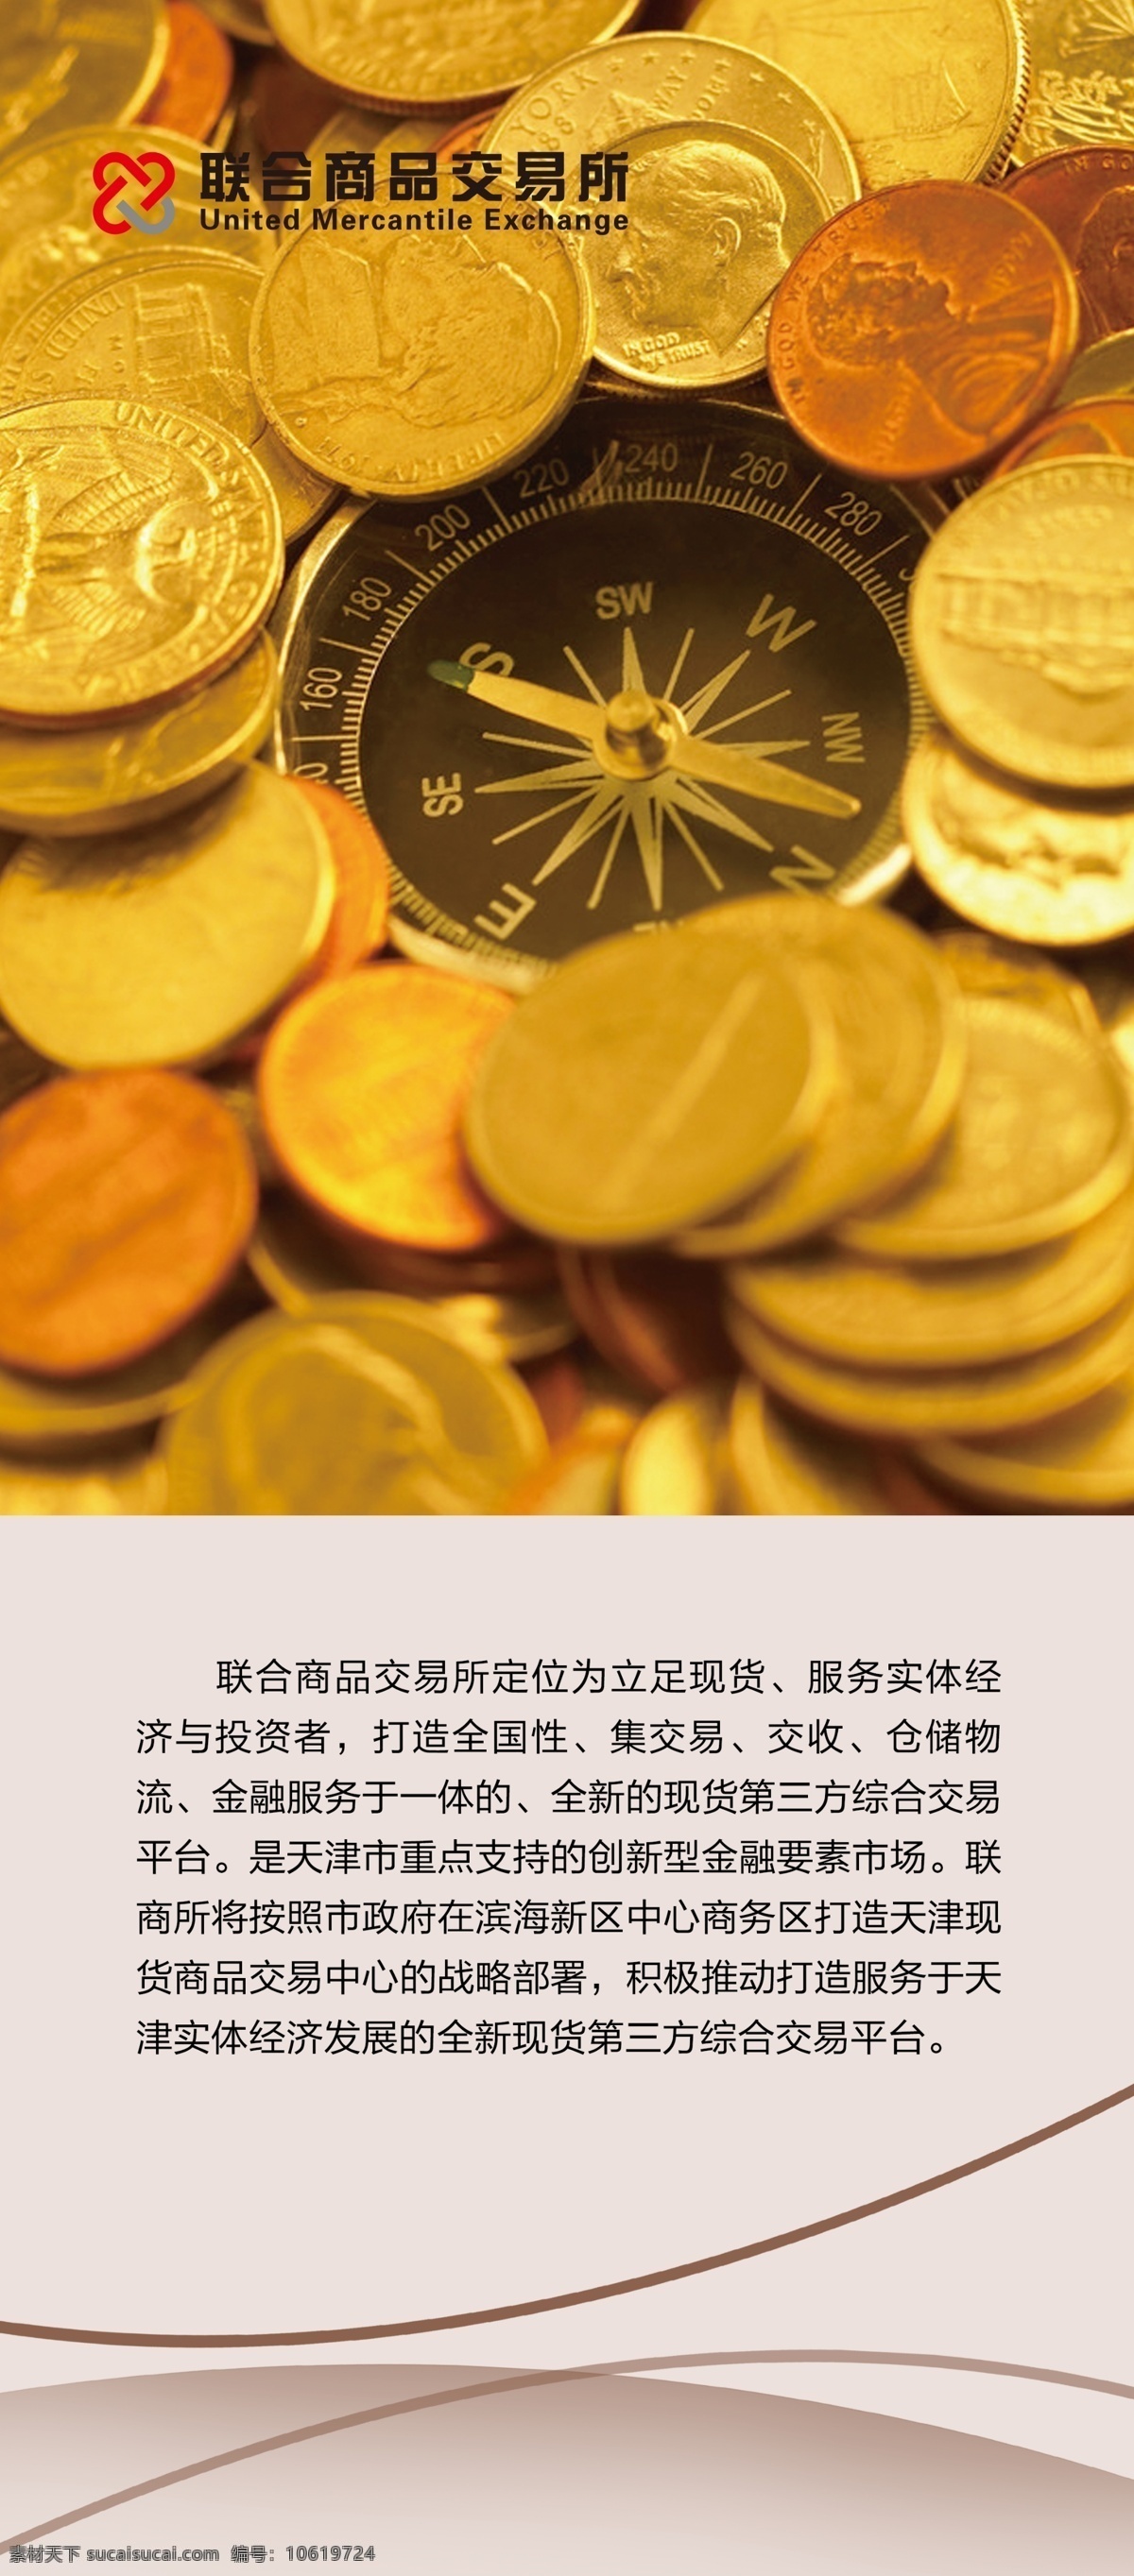 金融素材 金融 货币 展板 金币 文化 原创商务金融 商务金融 金融货币 黄色